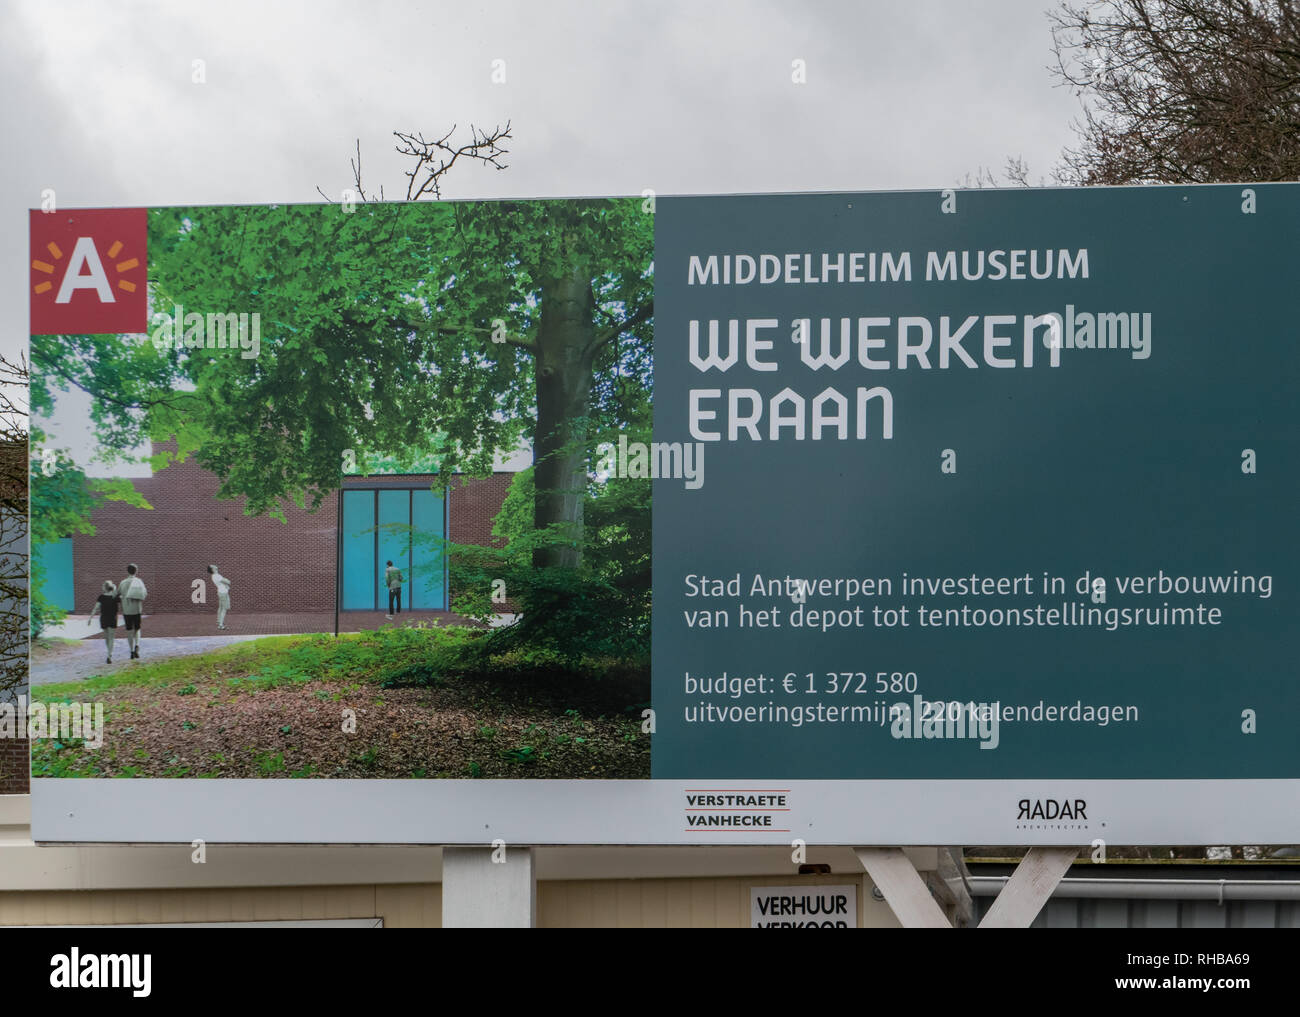 Construction sign reading ' we werken eraan ' in the Middelheim Park Museum in Antwerp, Belgium Stock Photo